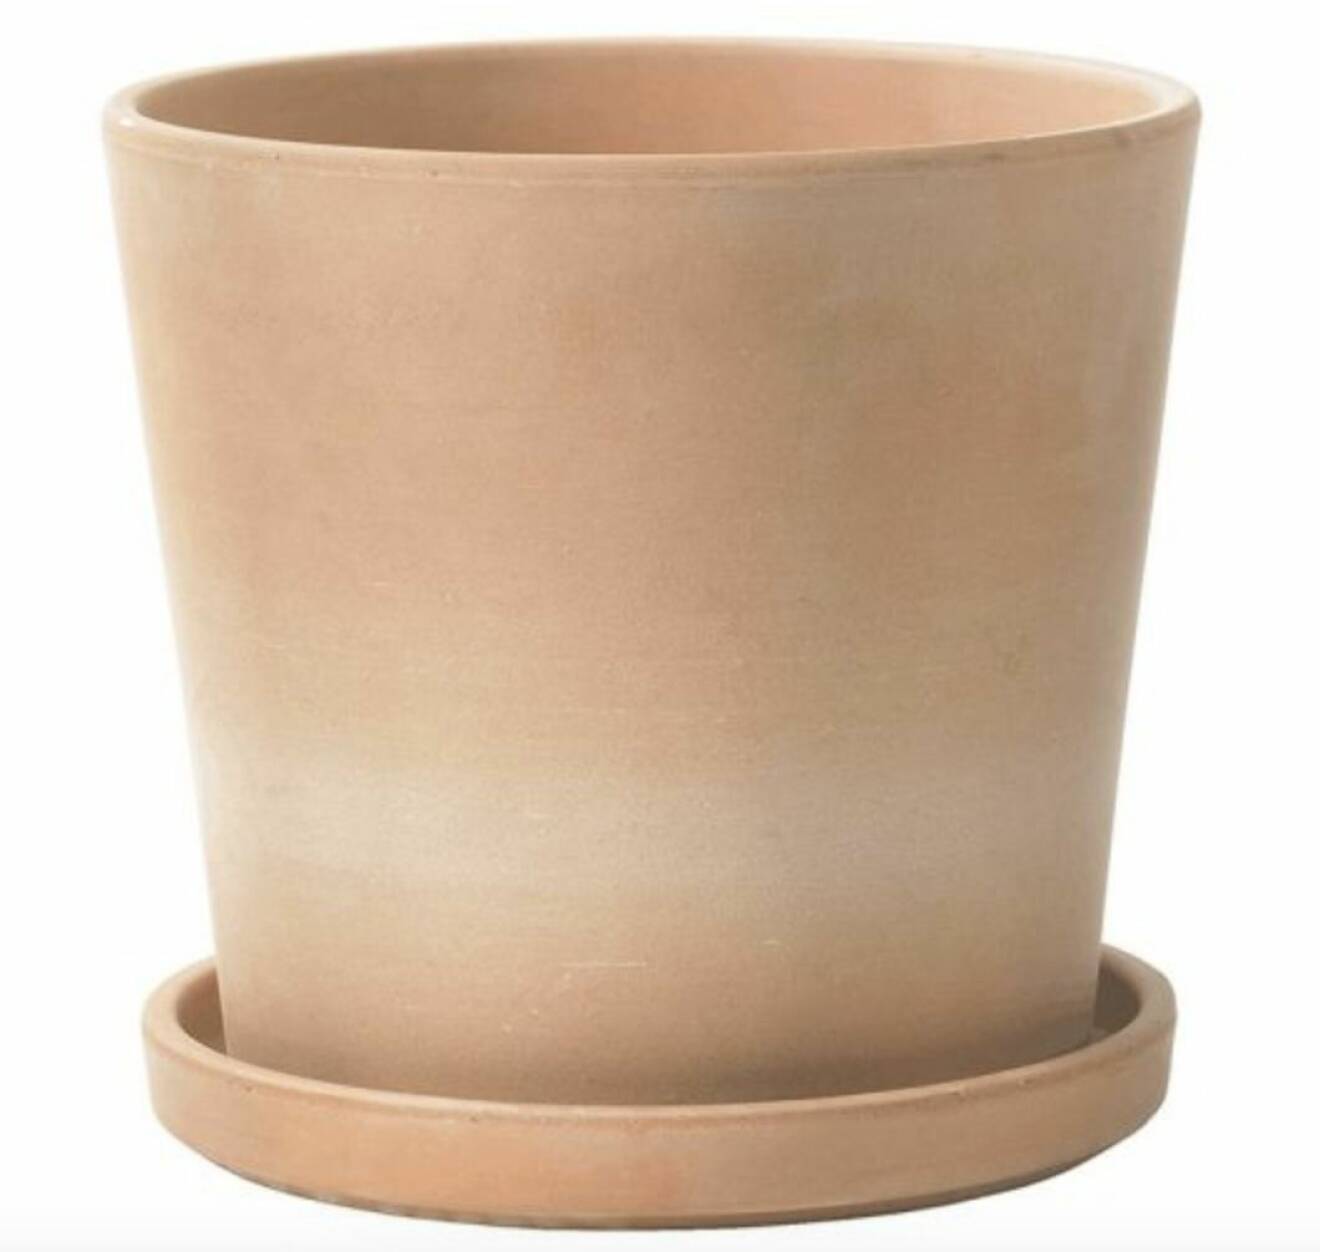 Byggmax kruka i keramik